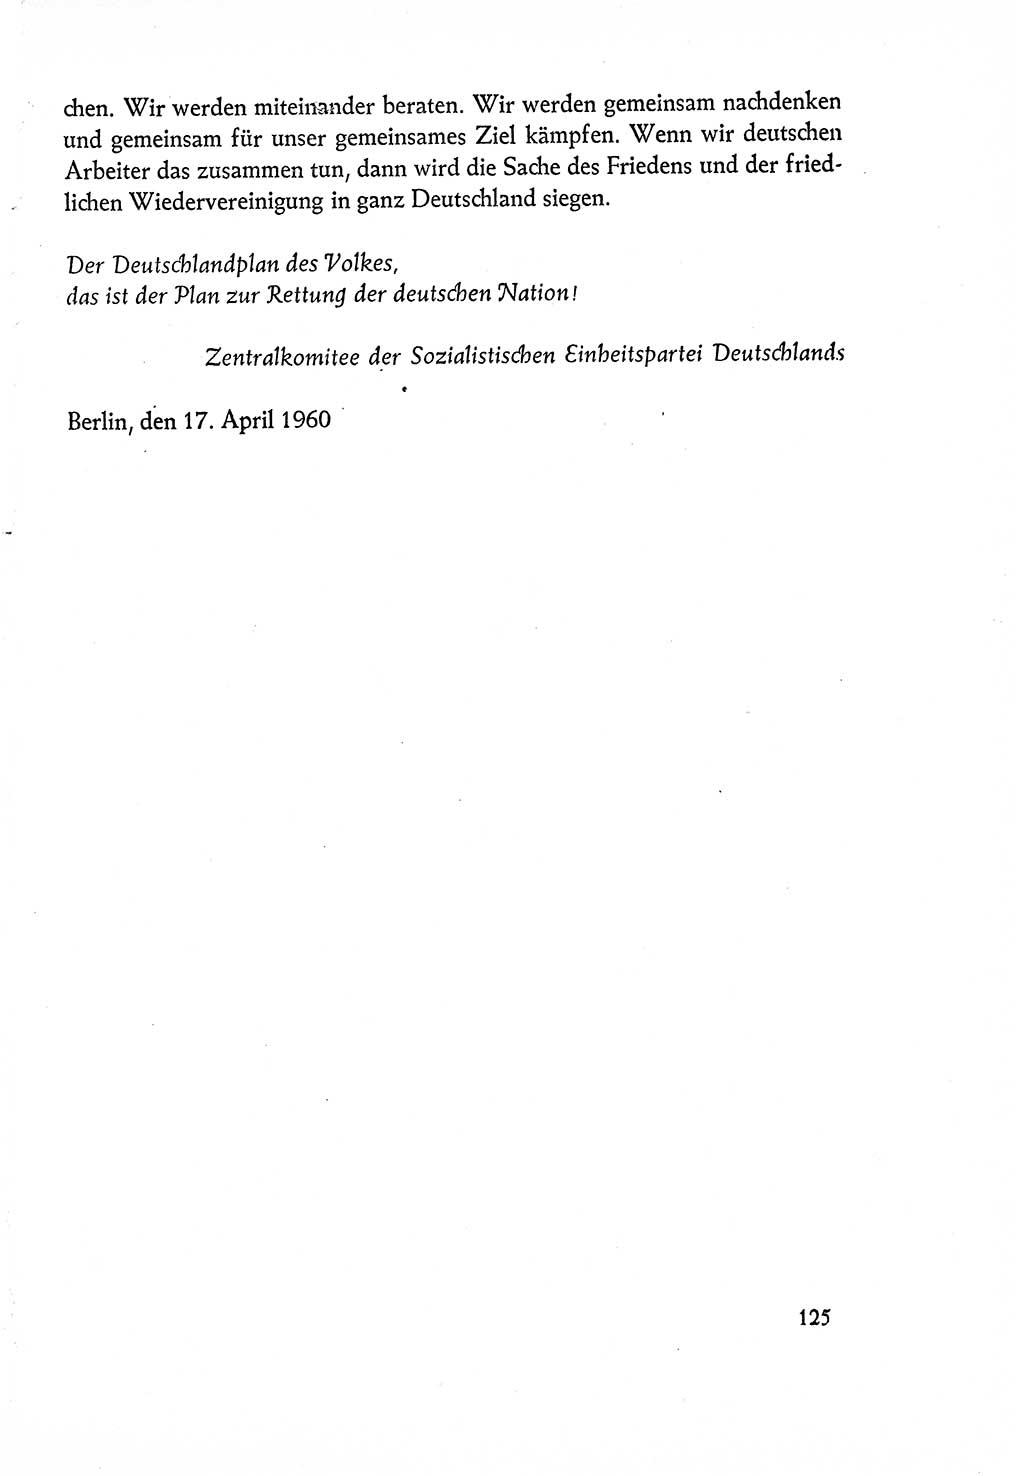 Dokumente der Sozialistischen Einheitspartei Deutschlands (SED) [Deutsche Demokratische Republik (DDR)] 1960-1961, Seite 125 (Dok. SED DDR 1960-1961, S. 125)